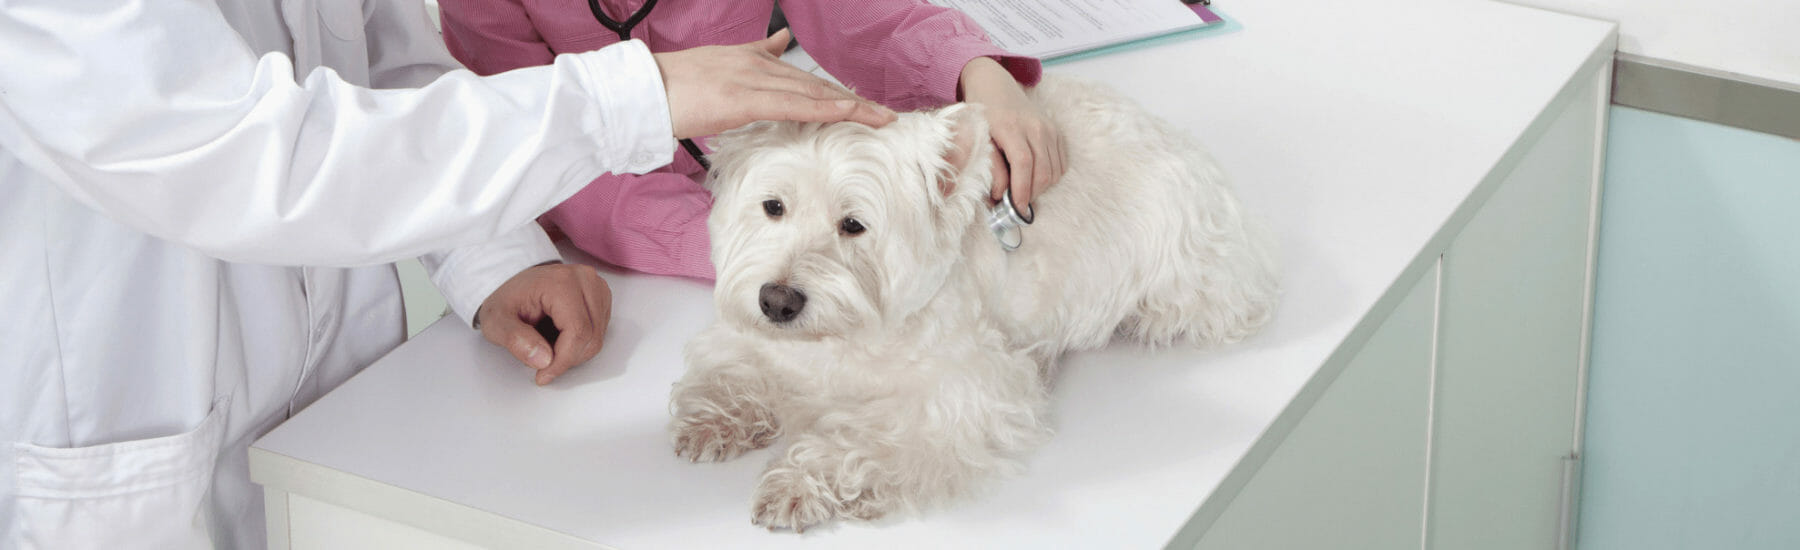 Un chien blanc est examiné par un vétérinaire